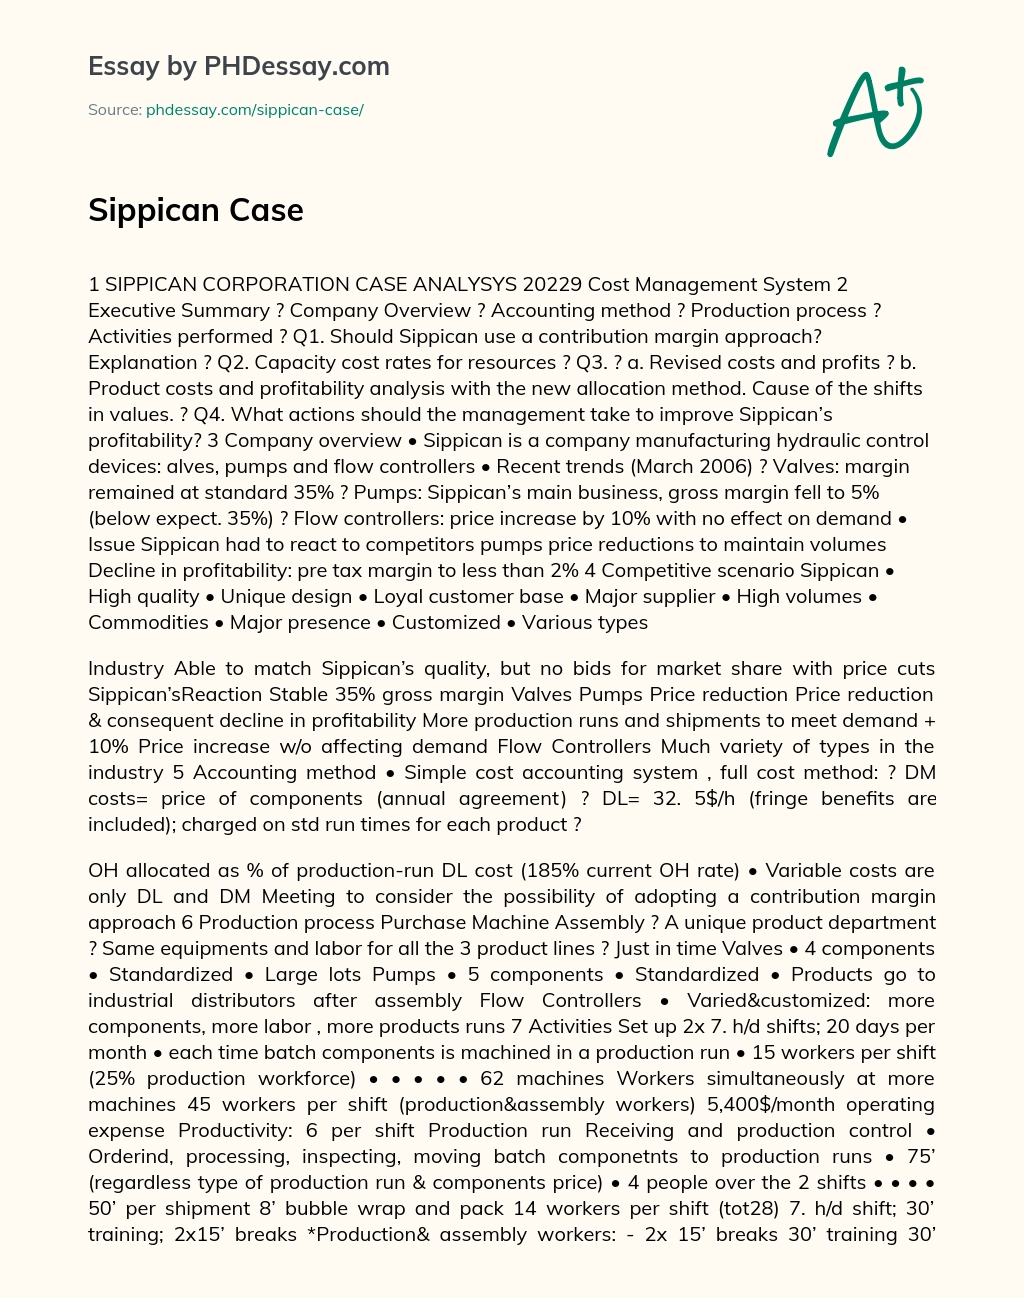 Sippican Case essay